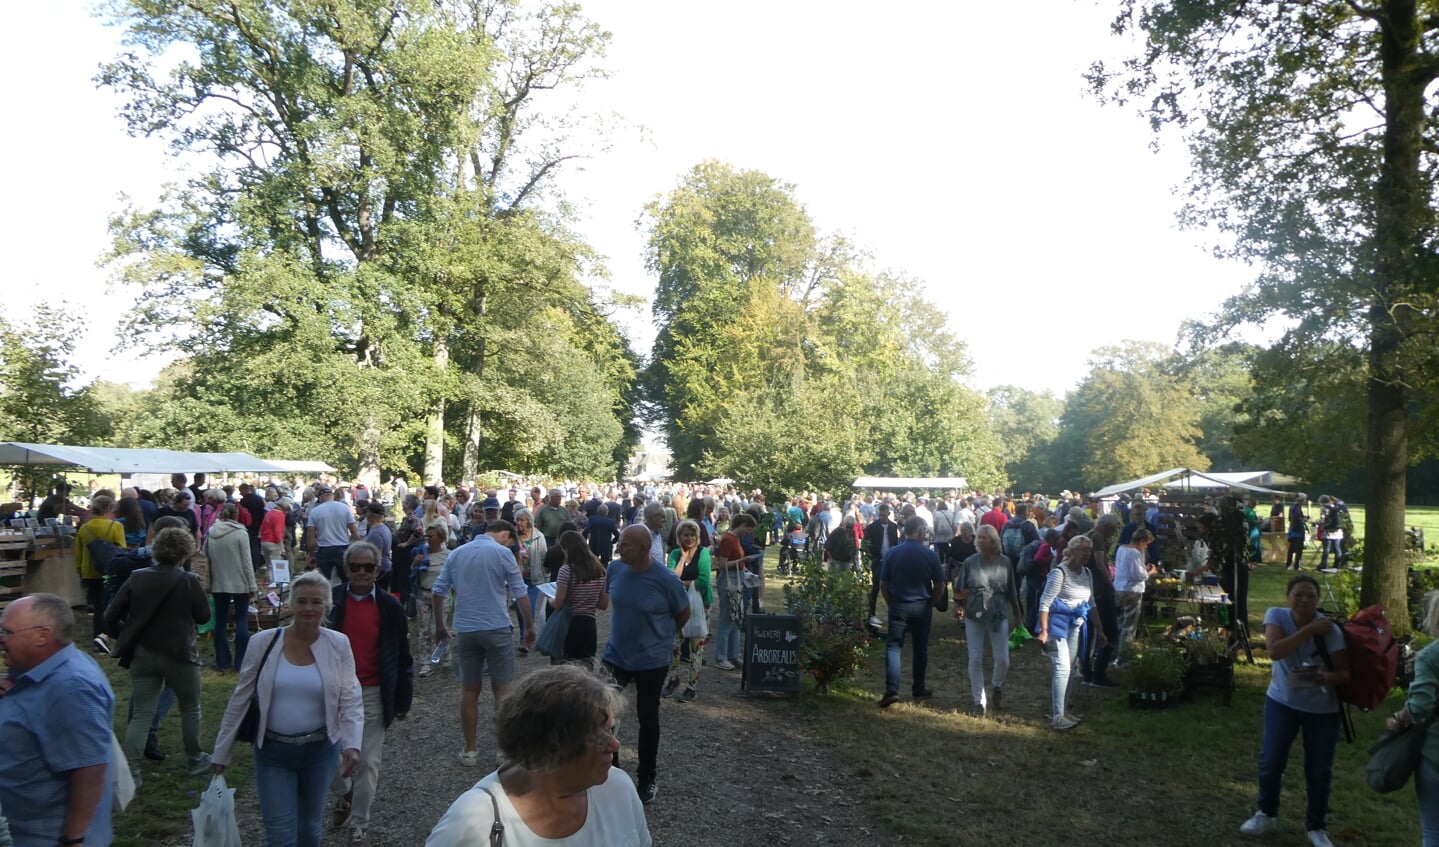 Rond de 6500 bezoekers bezochten zondag de Ambachtelijke Plantenmarkt op Landgoed De Wiersse. Foto's: Jan Hendriksen